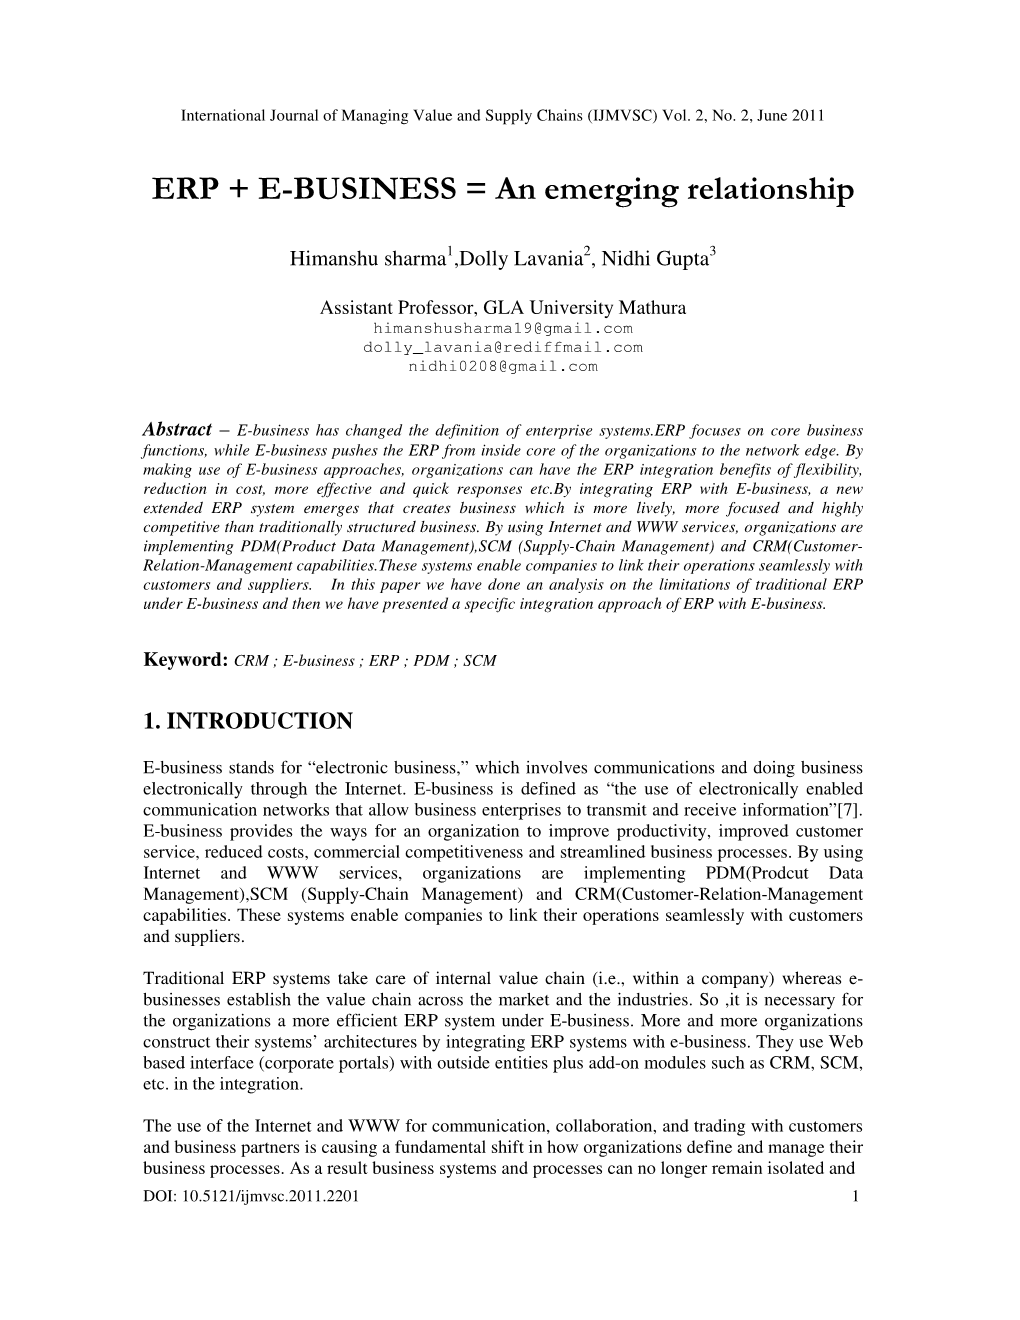 ERP + E-BUSINESS = an Emerging Relationship